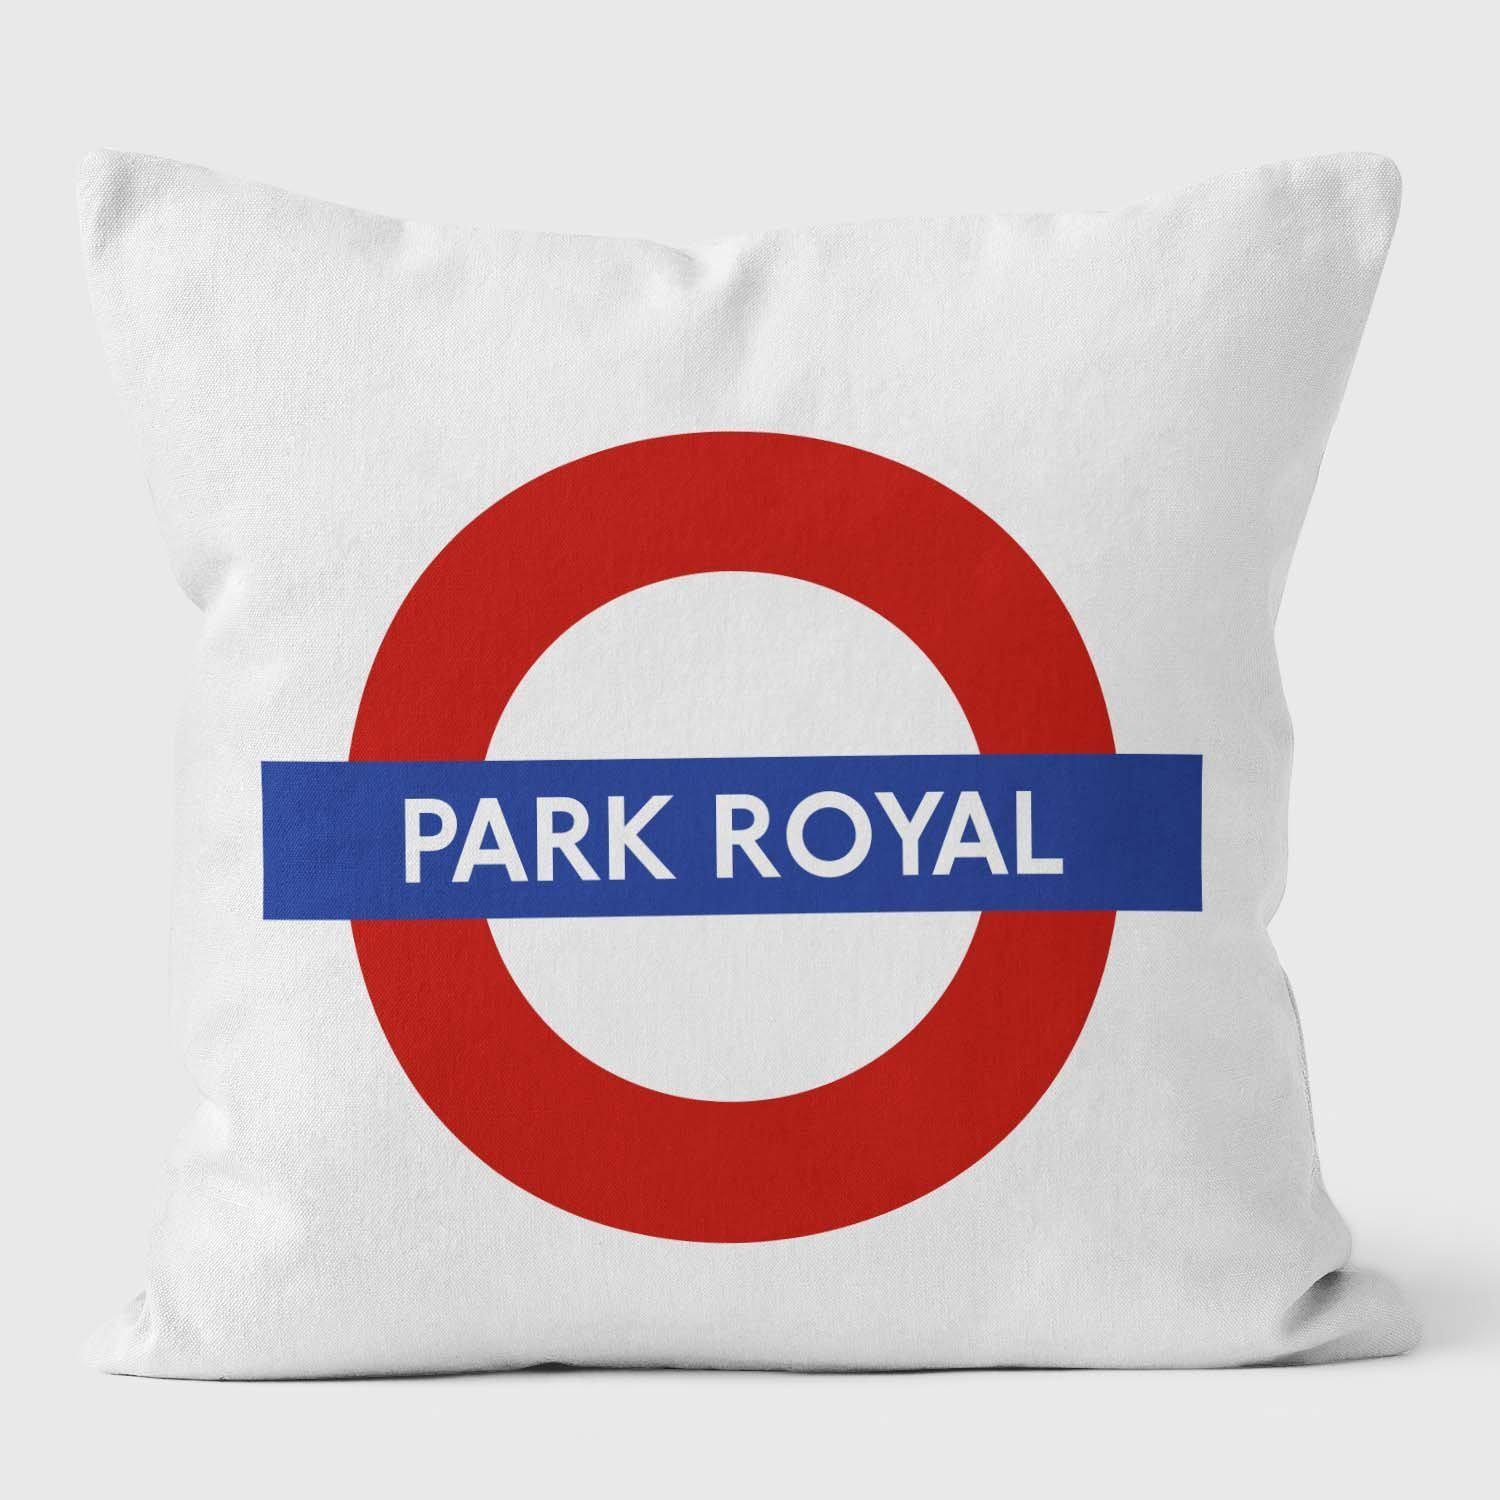 Park Royal London Underground Tube Station Roundel Cushion - Handmade Cushions UK - WeLoveCushions